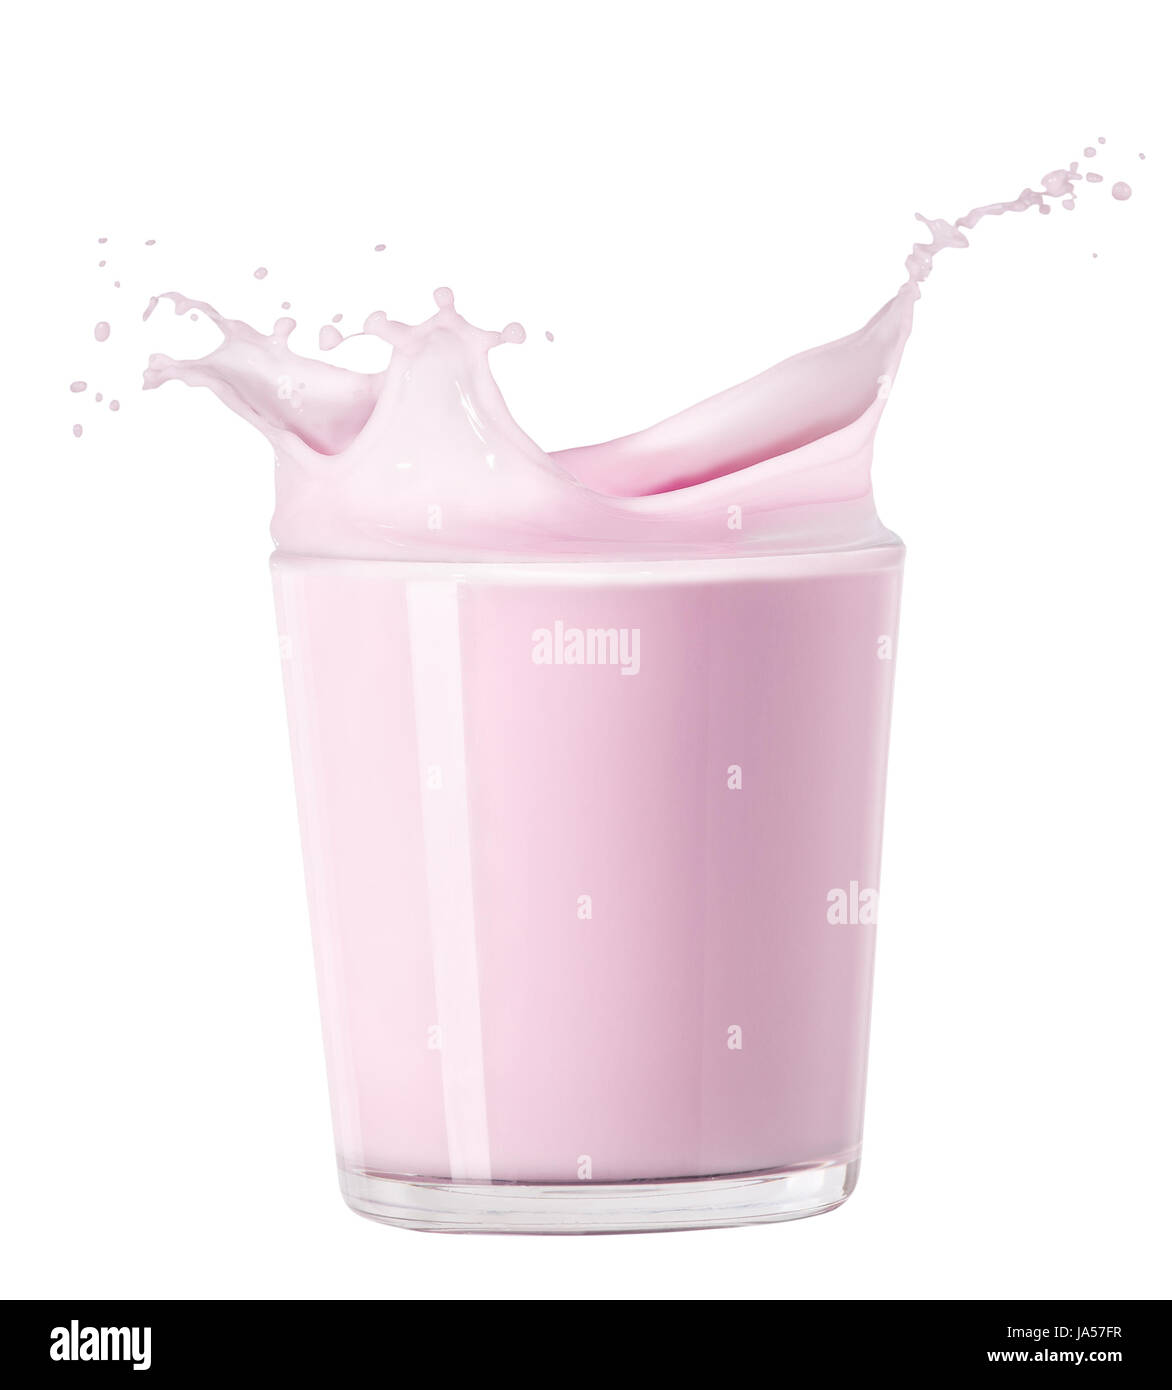 Vaso de leche fresa Foto de stock